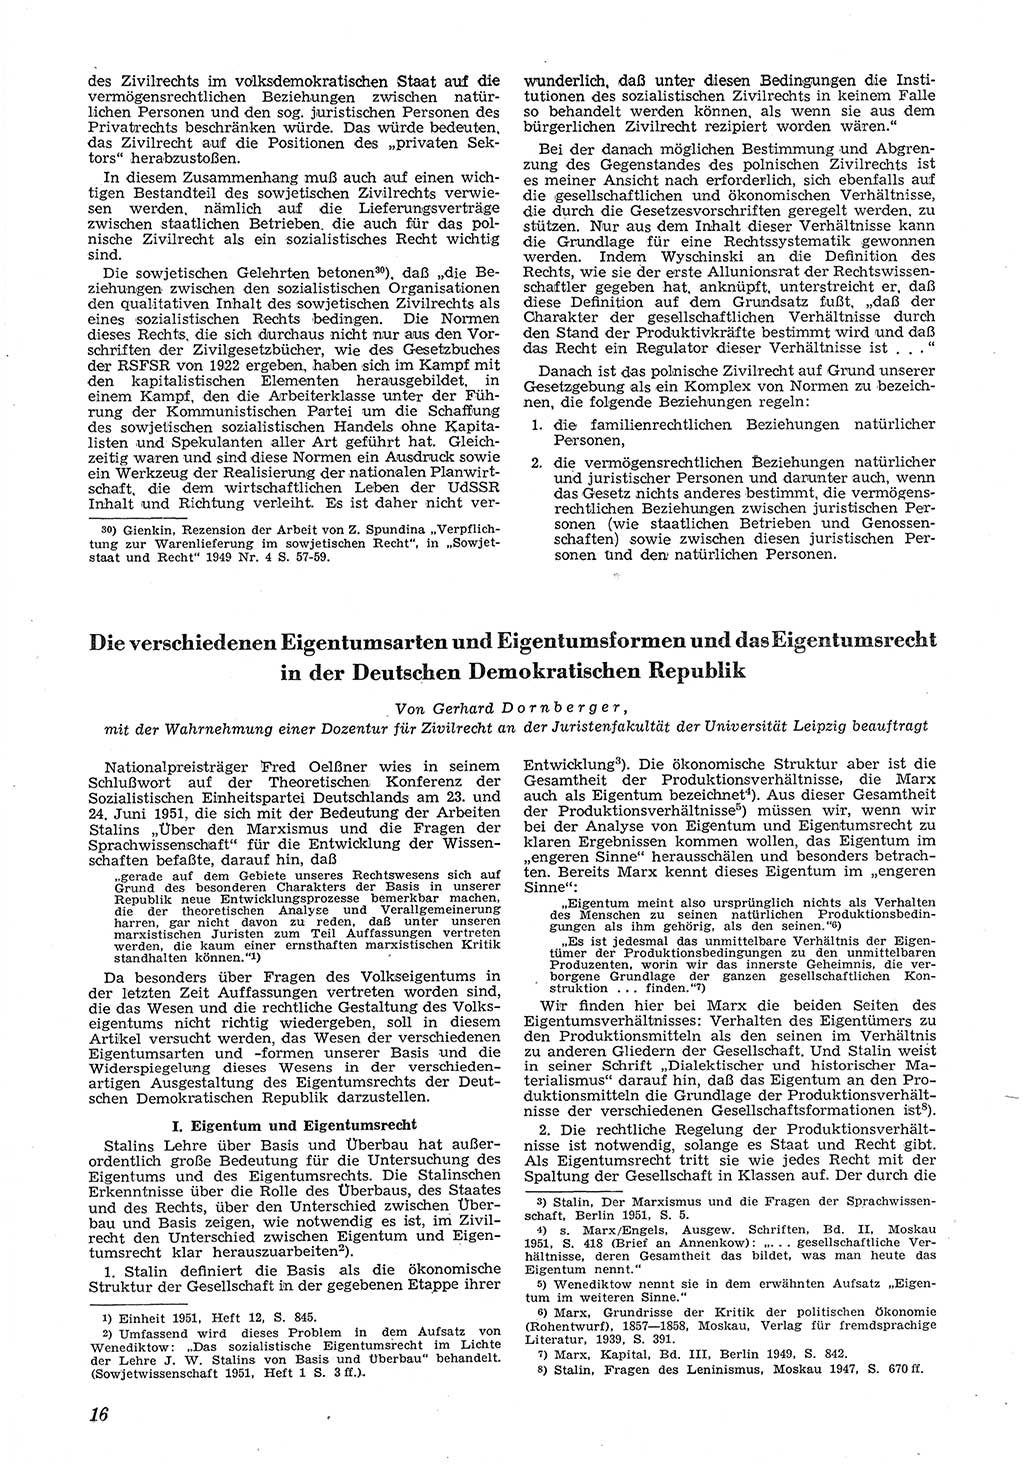 Neue Justiz (NJ), Zeitschrift für Recht und Rechtswissenschaft [Deutsche Demokratische Republik (DDR)], 6. Jahrgang 1952, Seite 16 (NJ DDR 1952, S. 16)